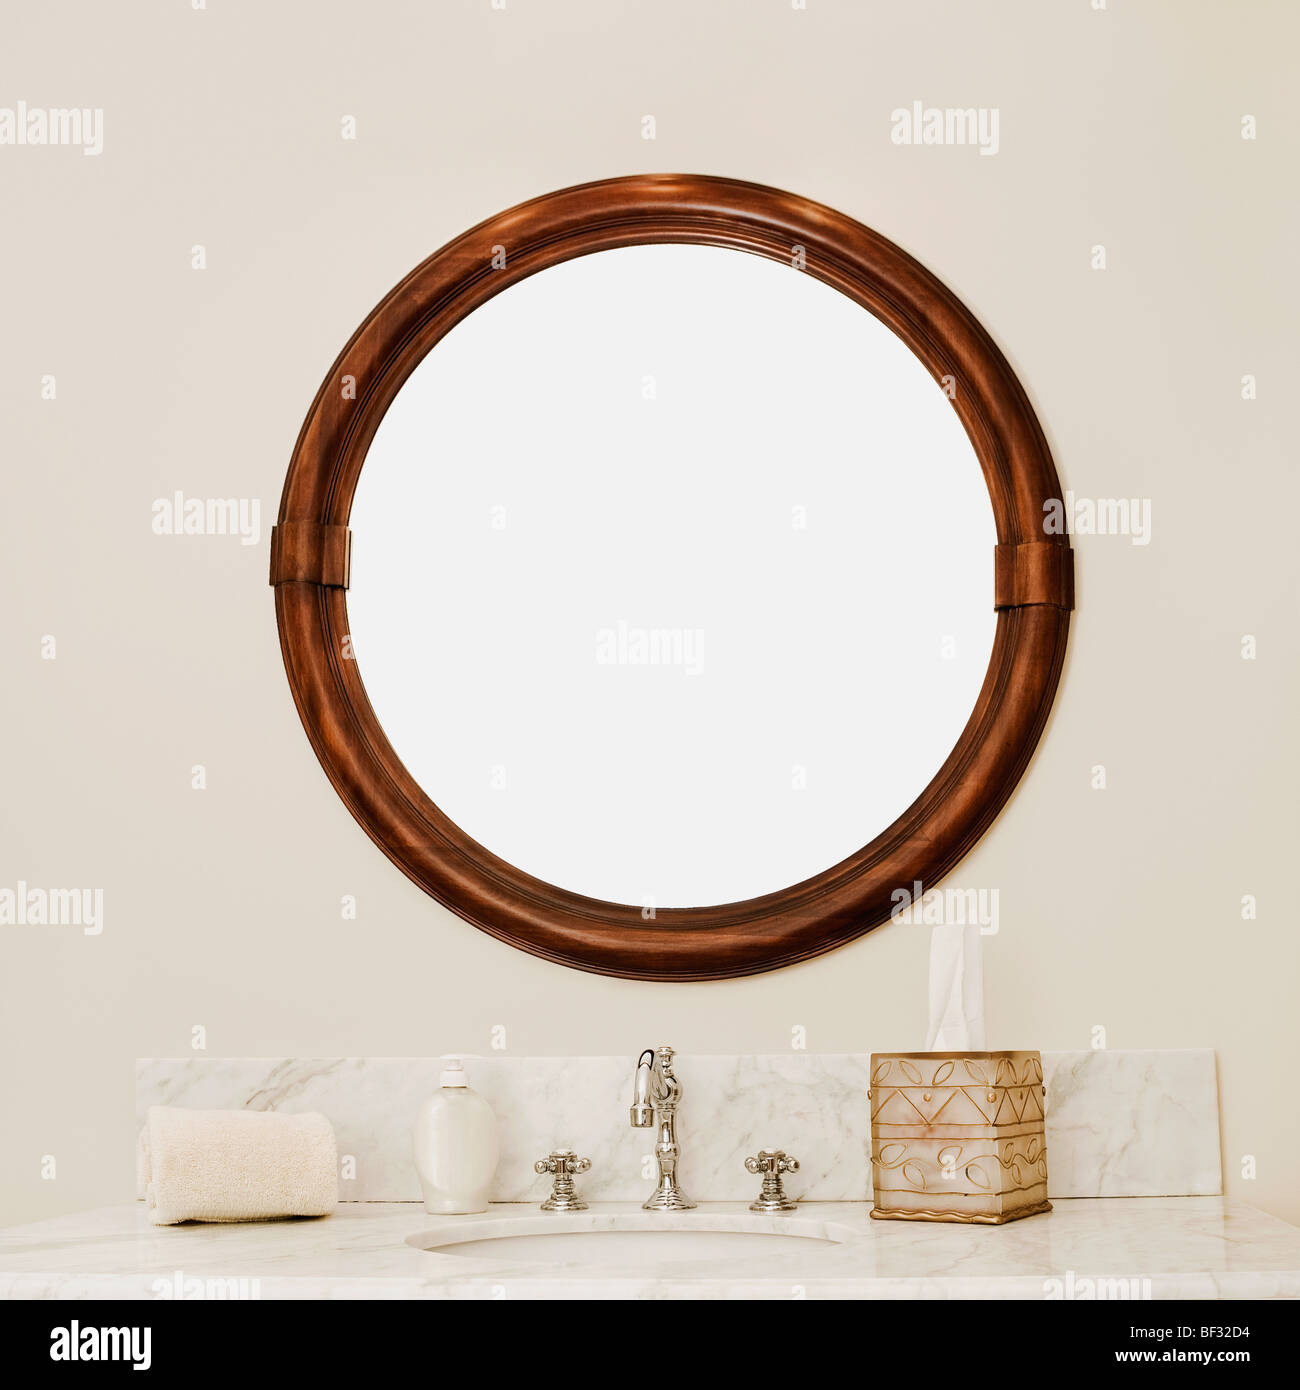 Près d'un miroir de salle de bains Banque D'Images